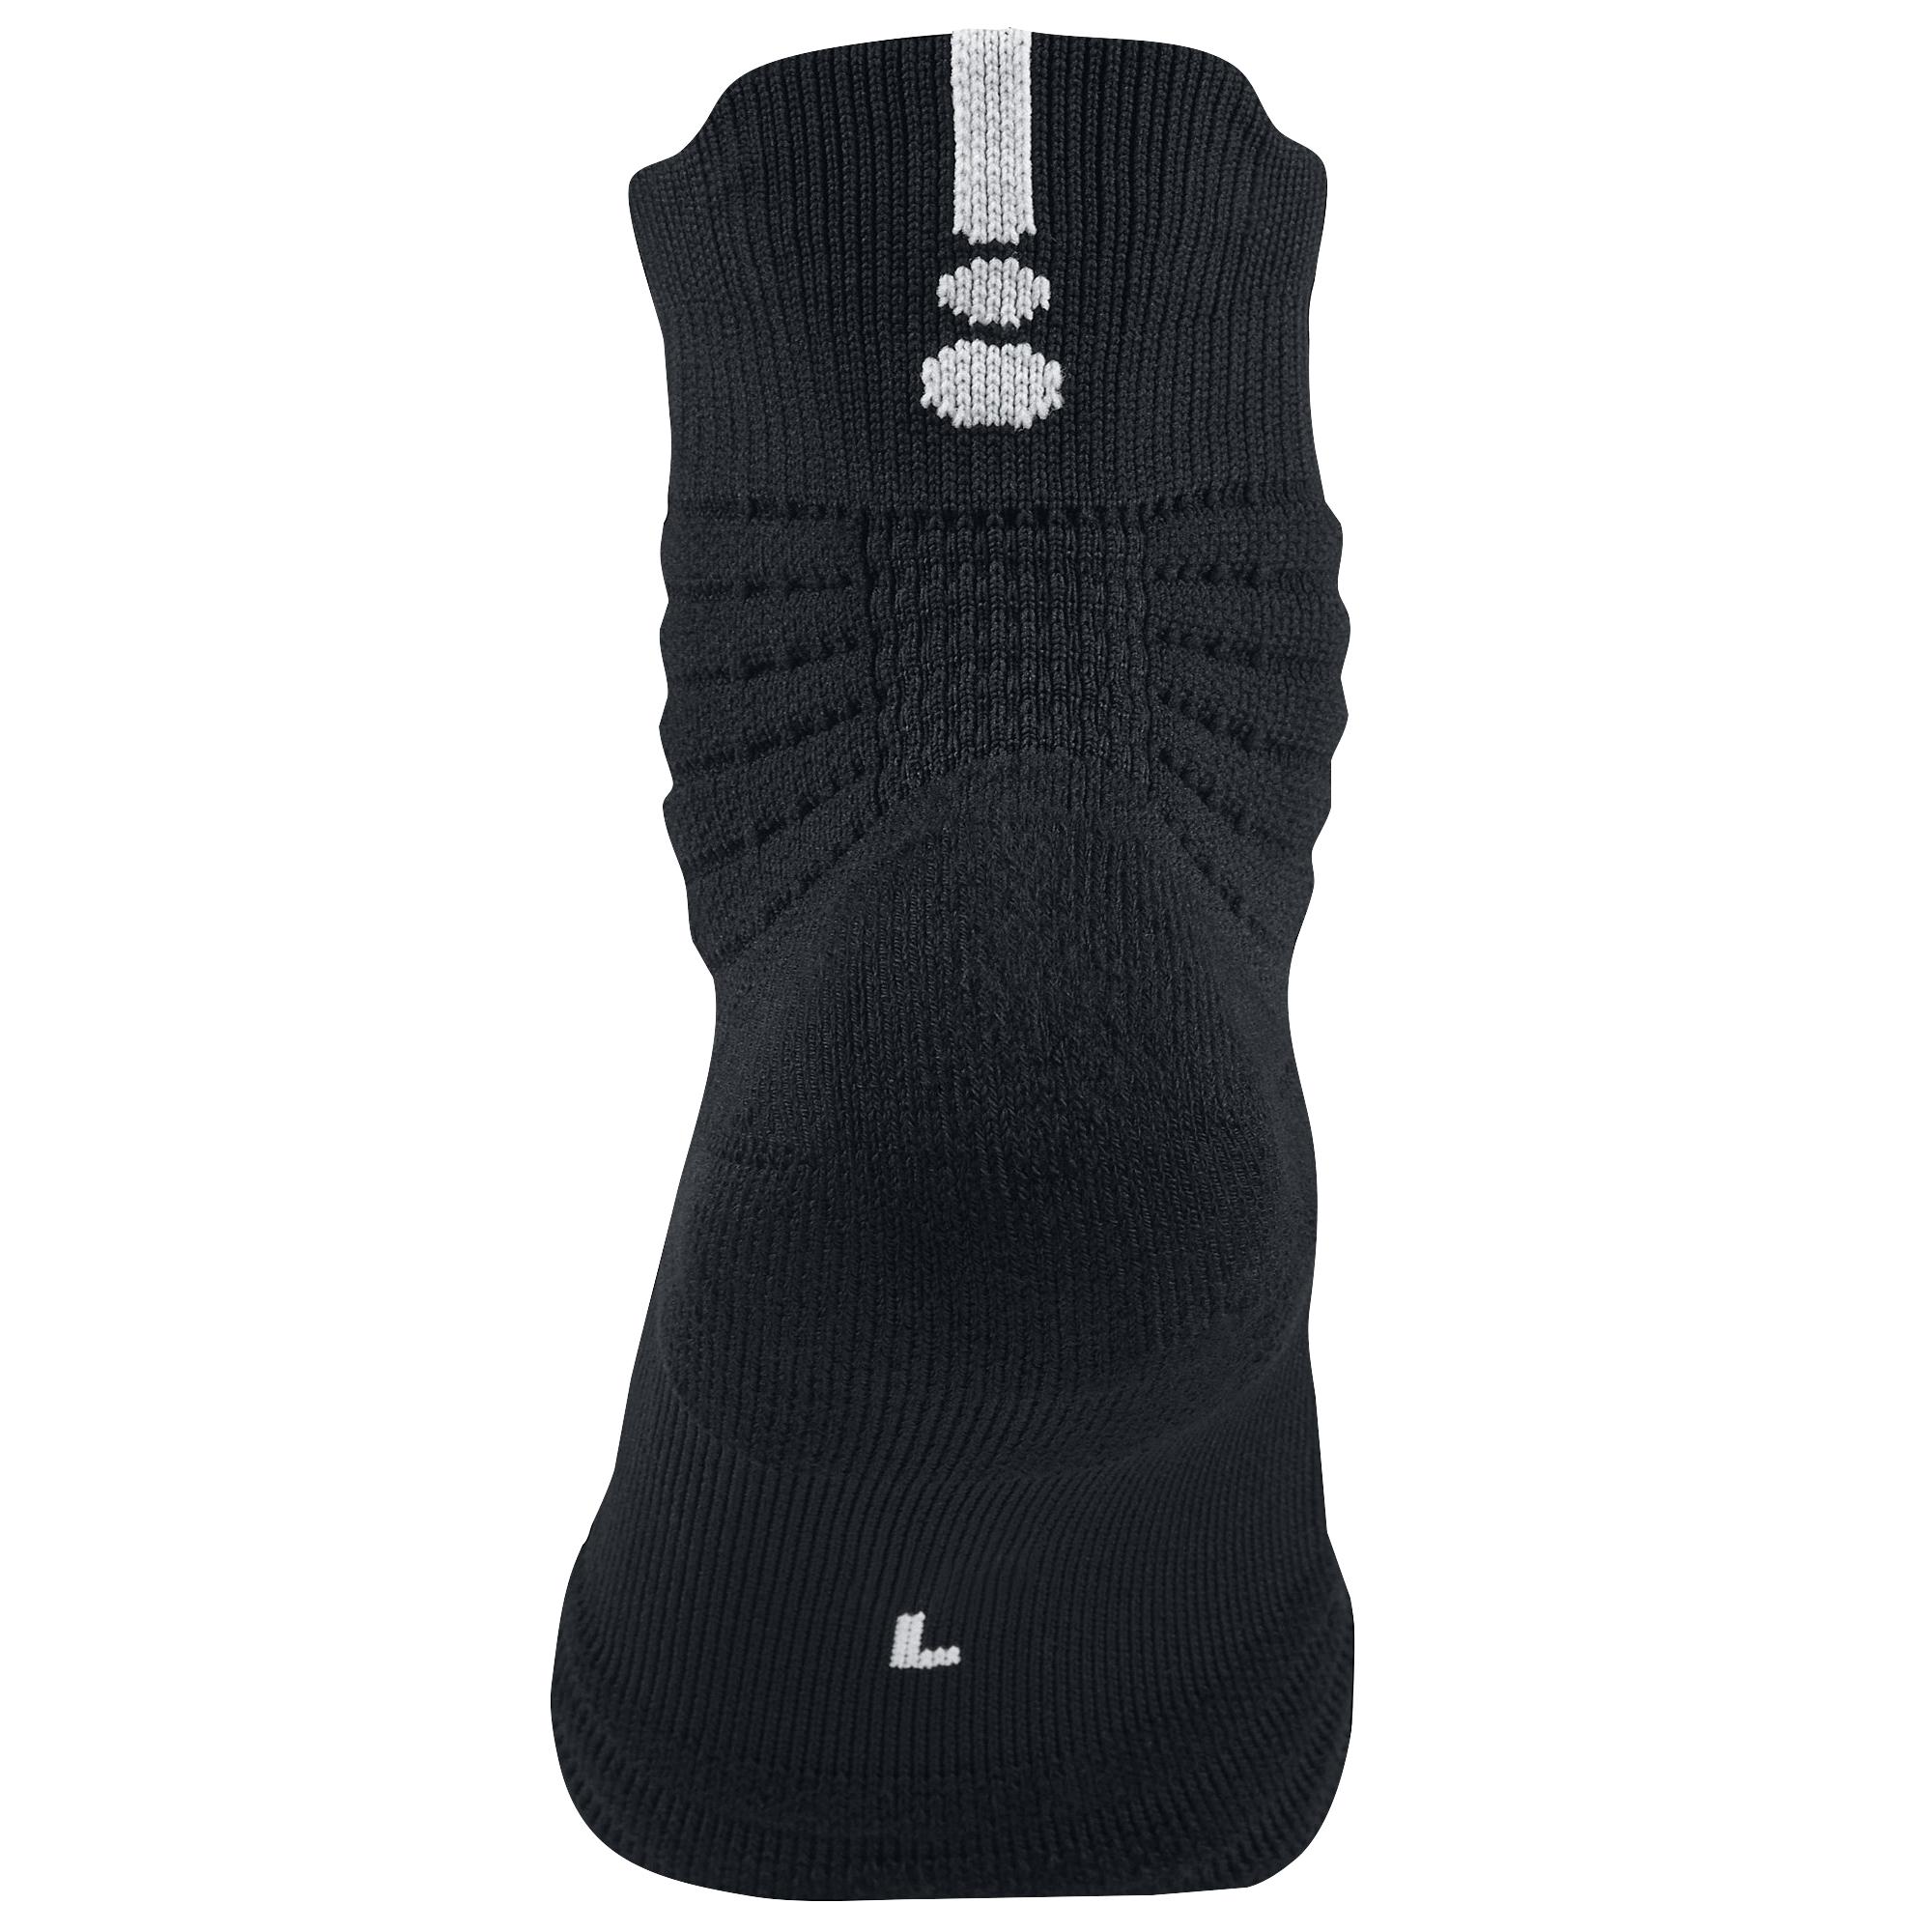 Nike Synthetic Elite Versatility Quarter Socks in Black/White (Black) for  Men - Lyst